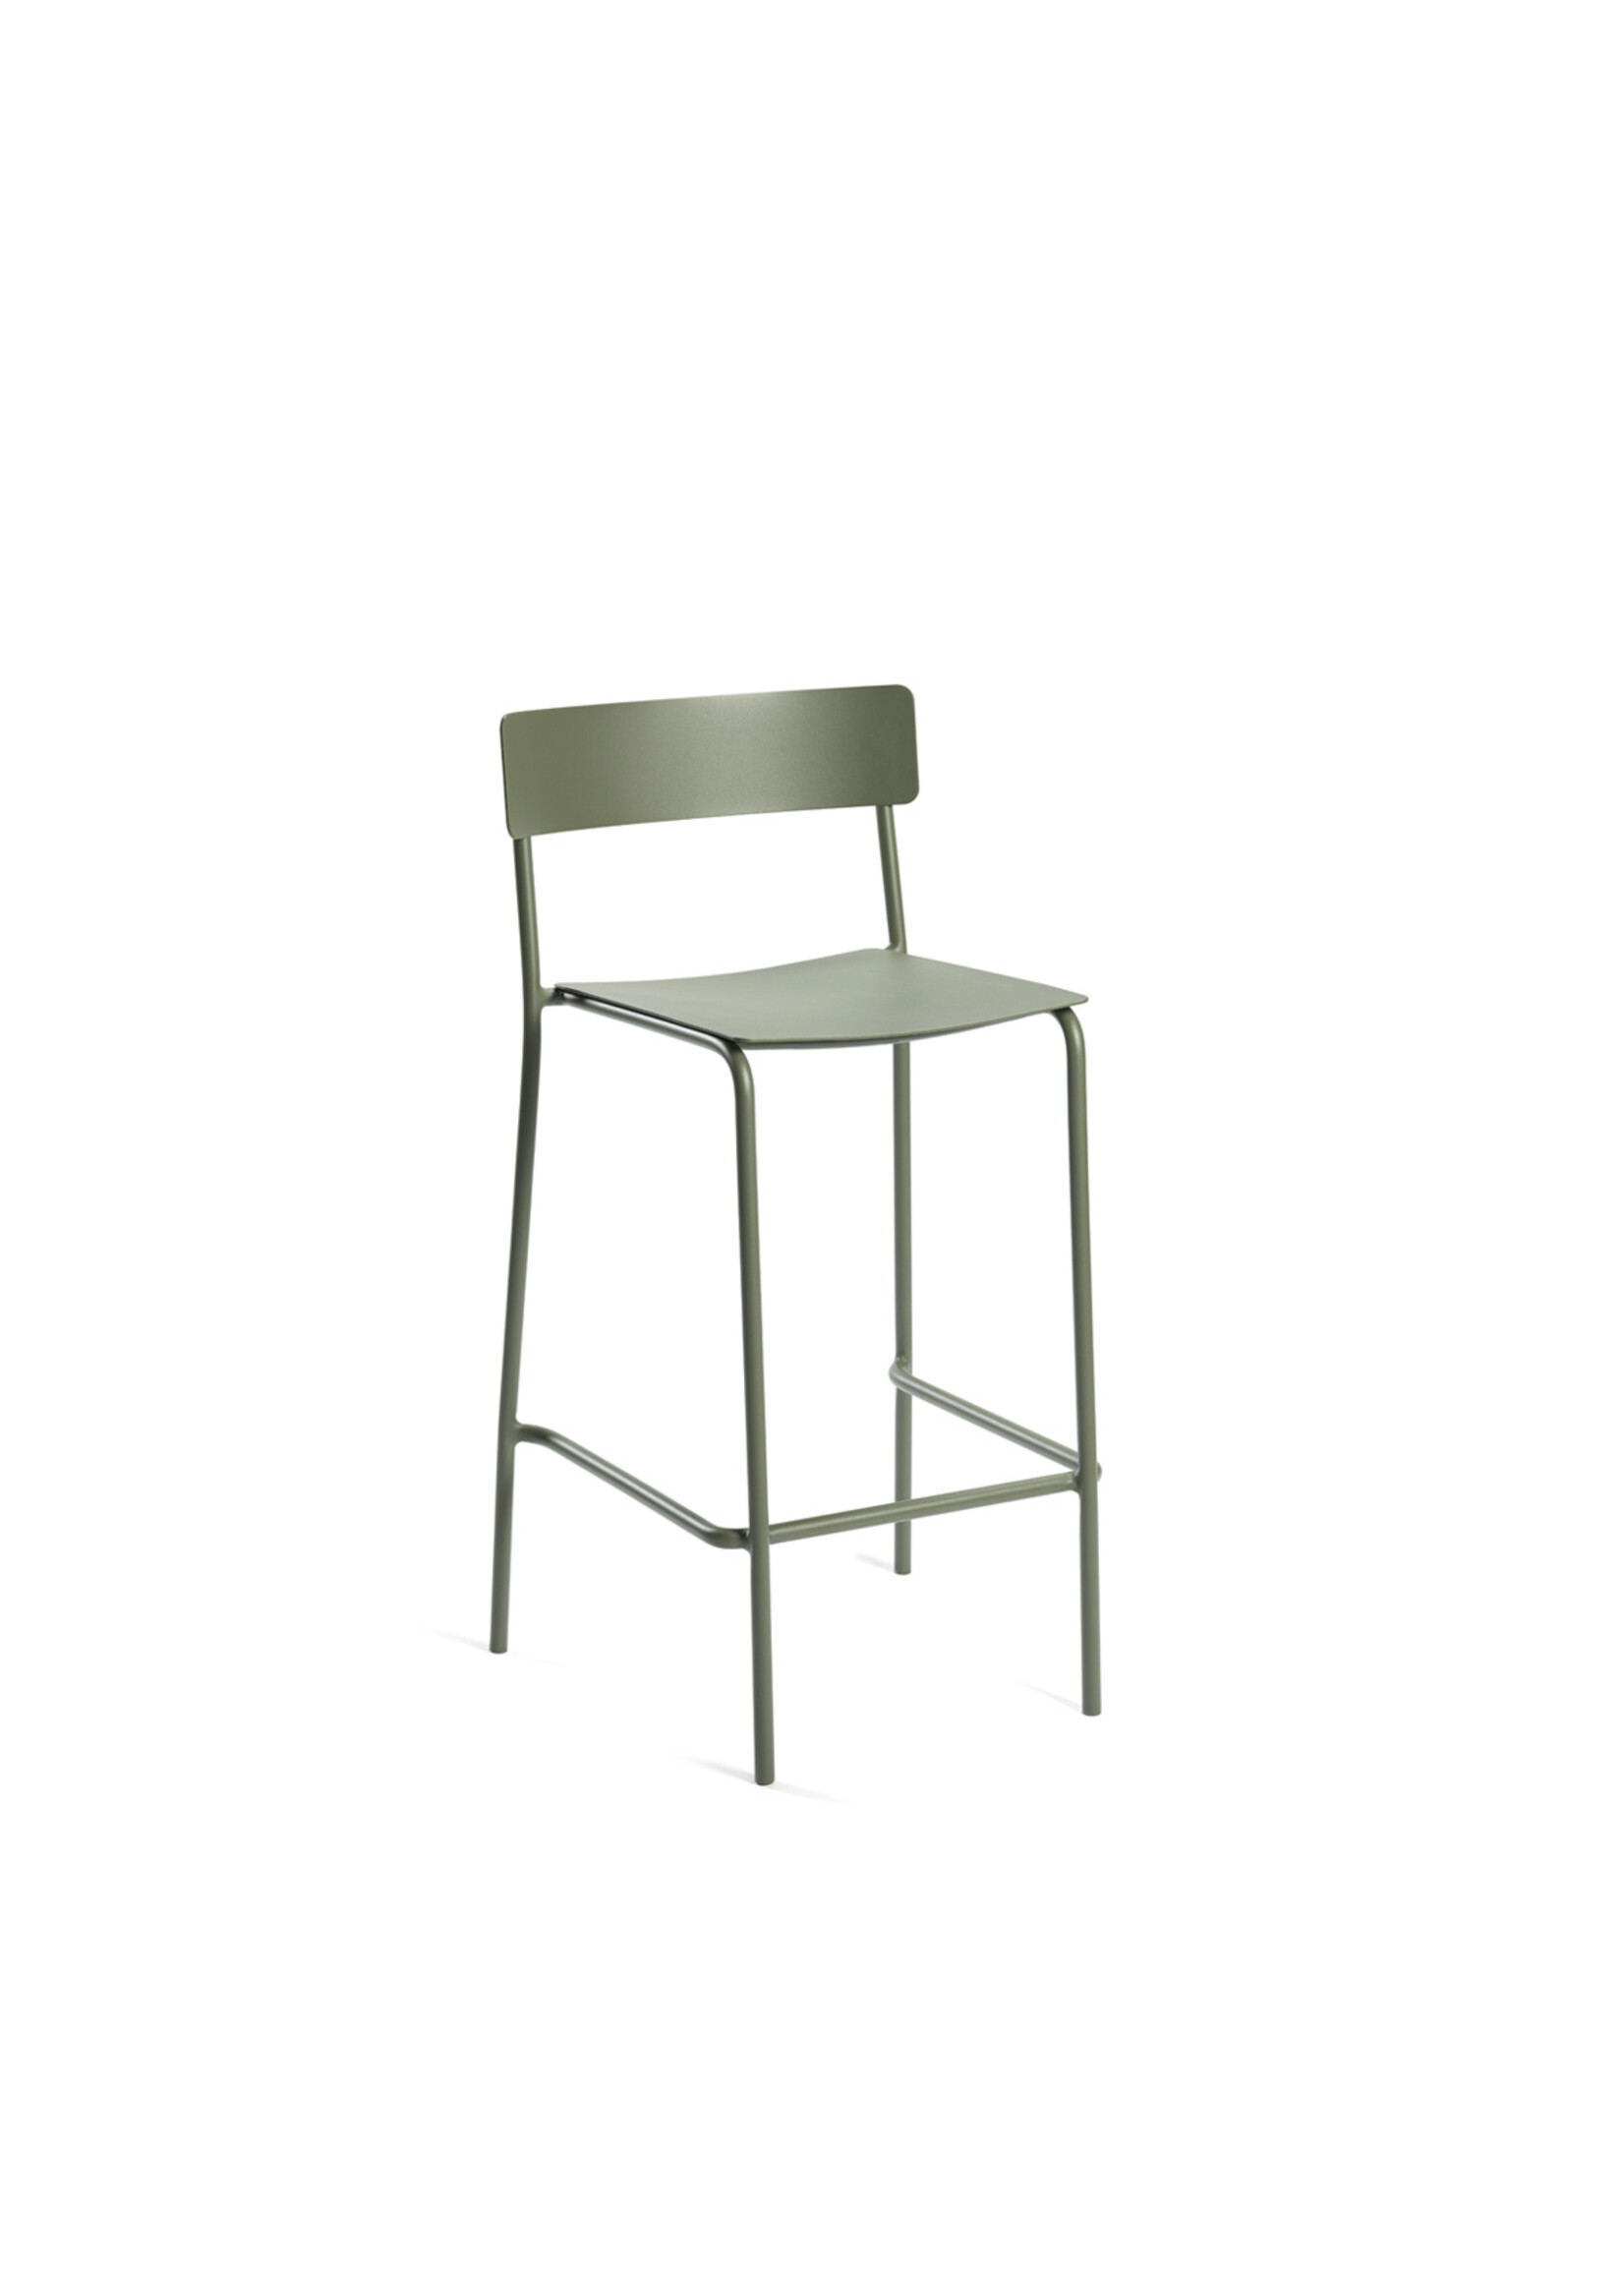 Serax August - Outdoor - Bar Chair - Eucalyptus Green